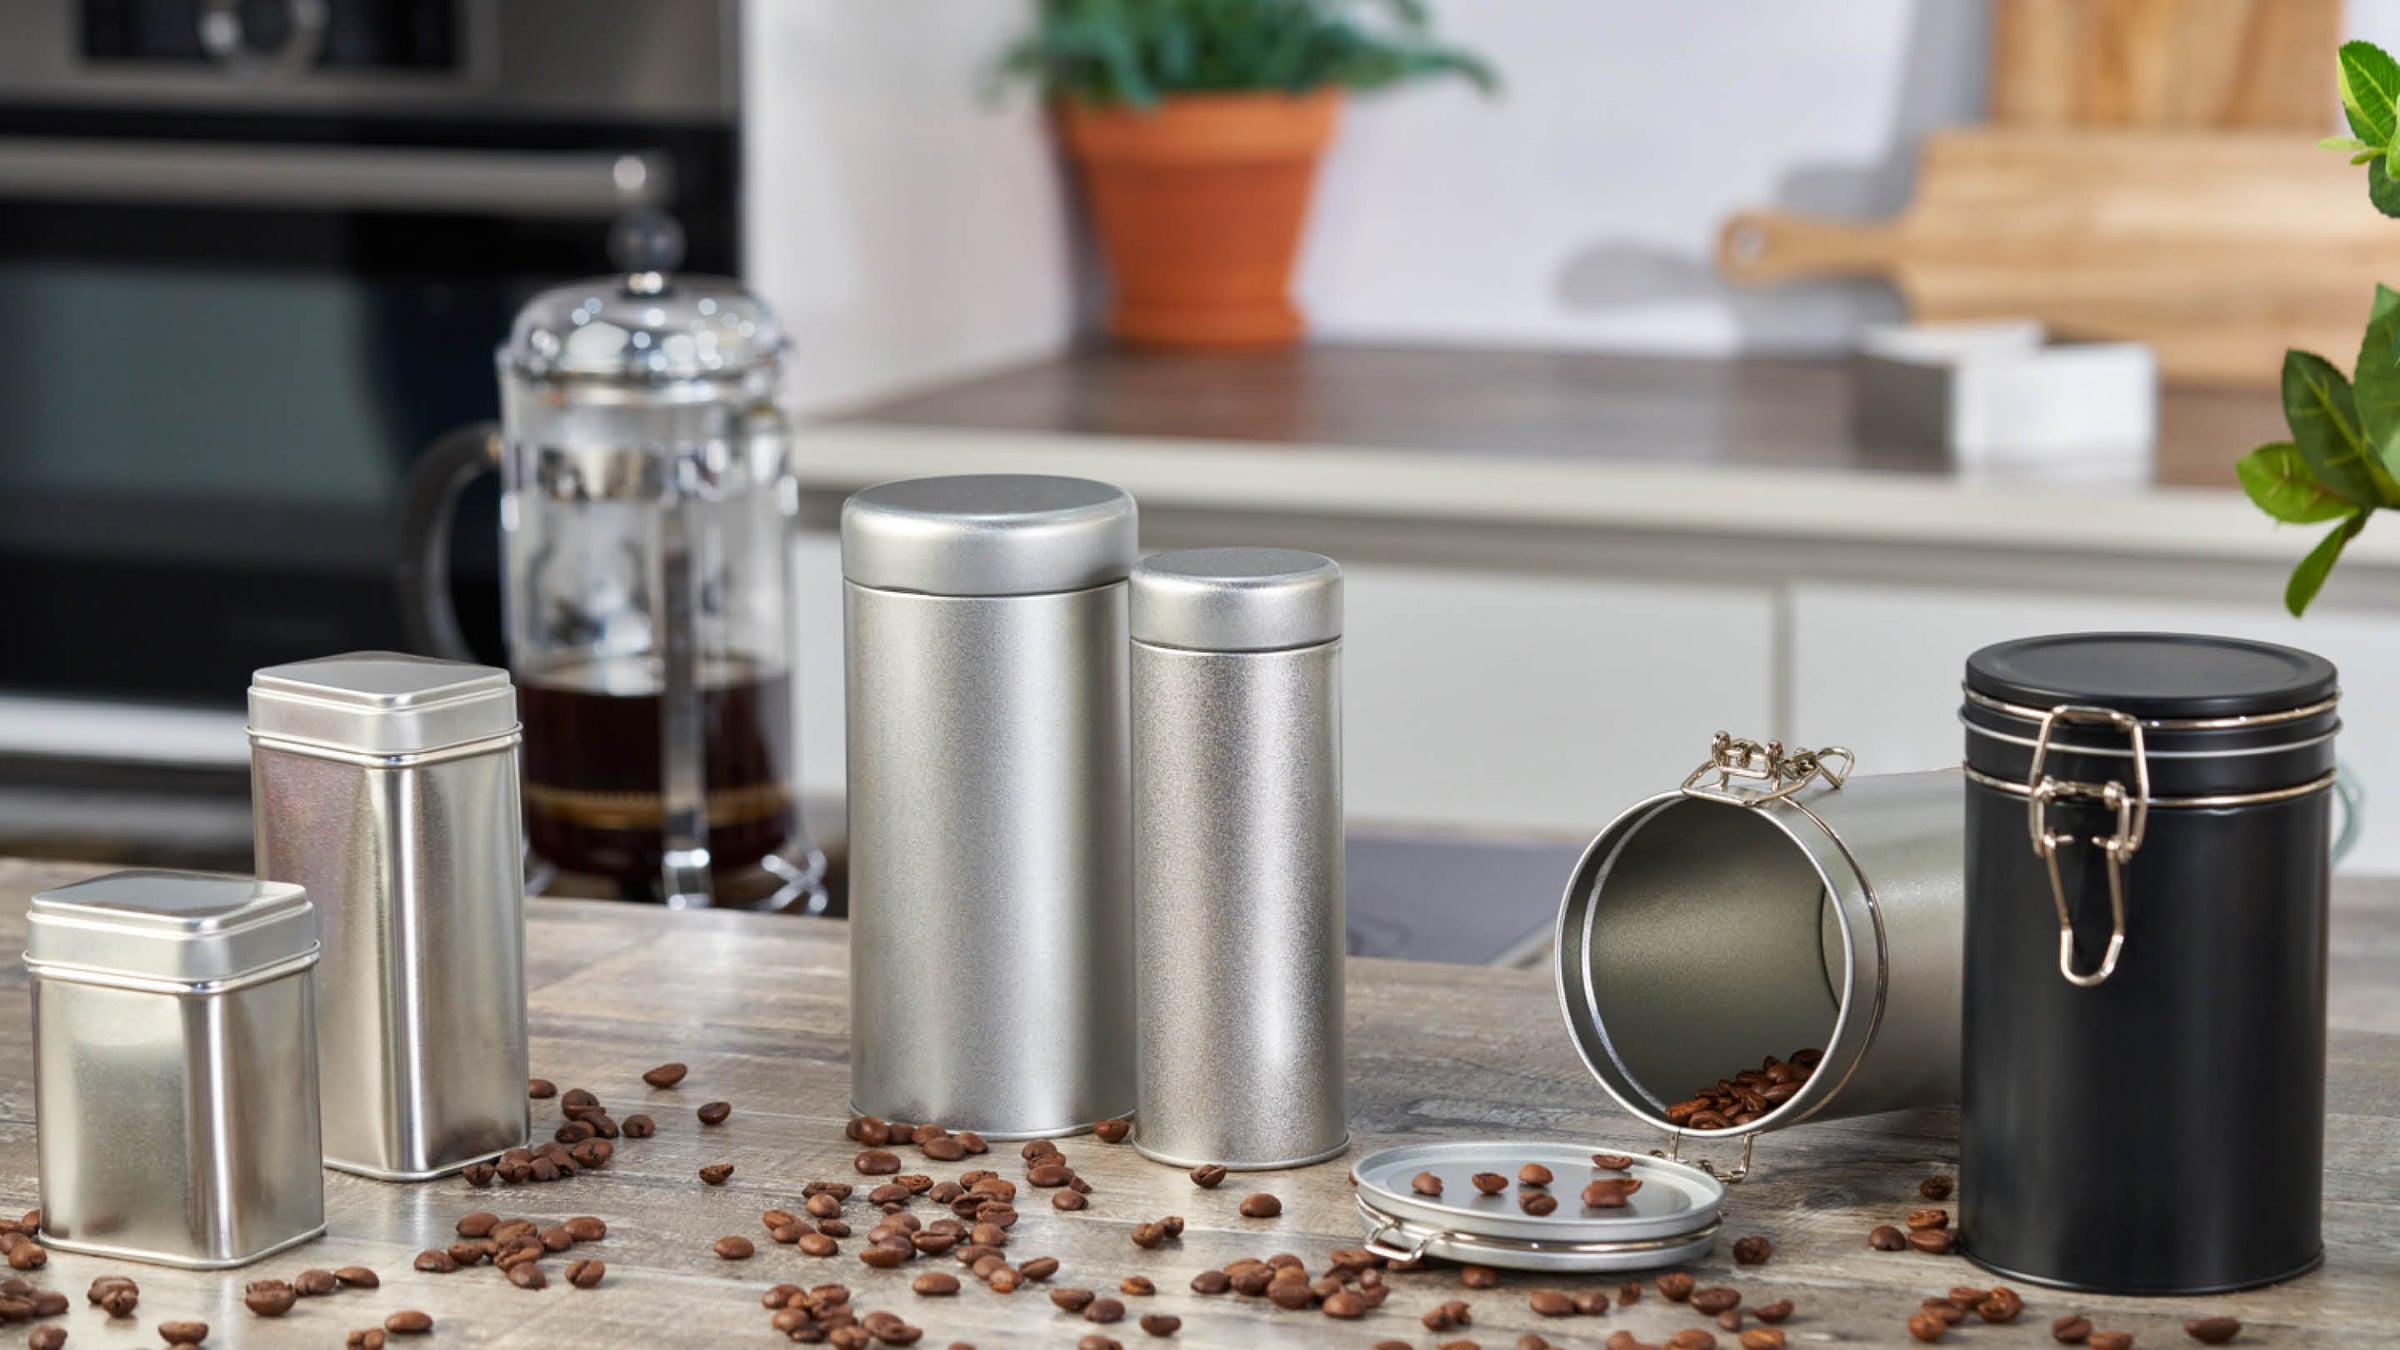 Een assortiment van metalen containers gebruikt voor koffie, specerijen, en kruiden in een keuken omgeving.